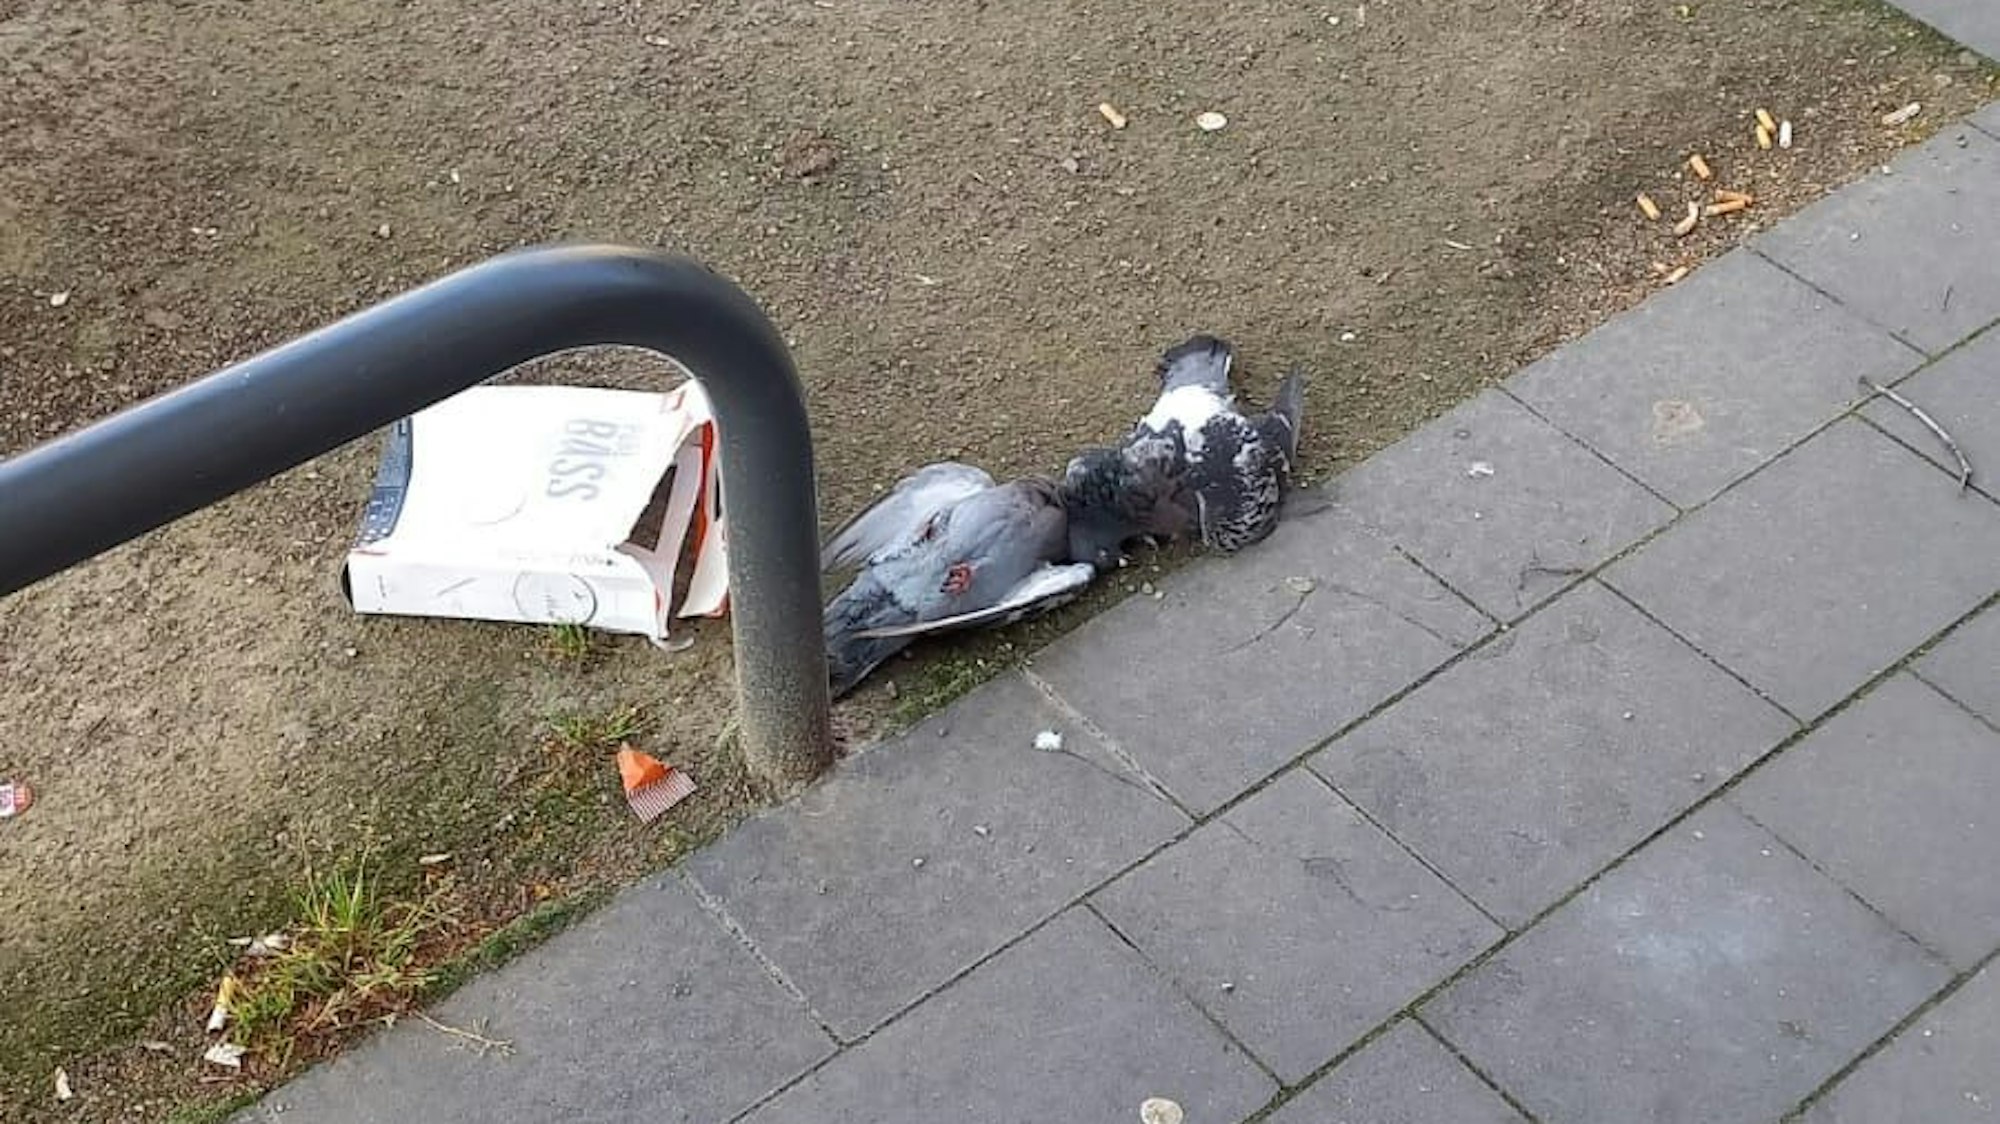 Zwei tote Tauben liegen neben einem Gehweg im Dreck.